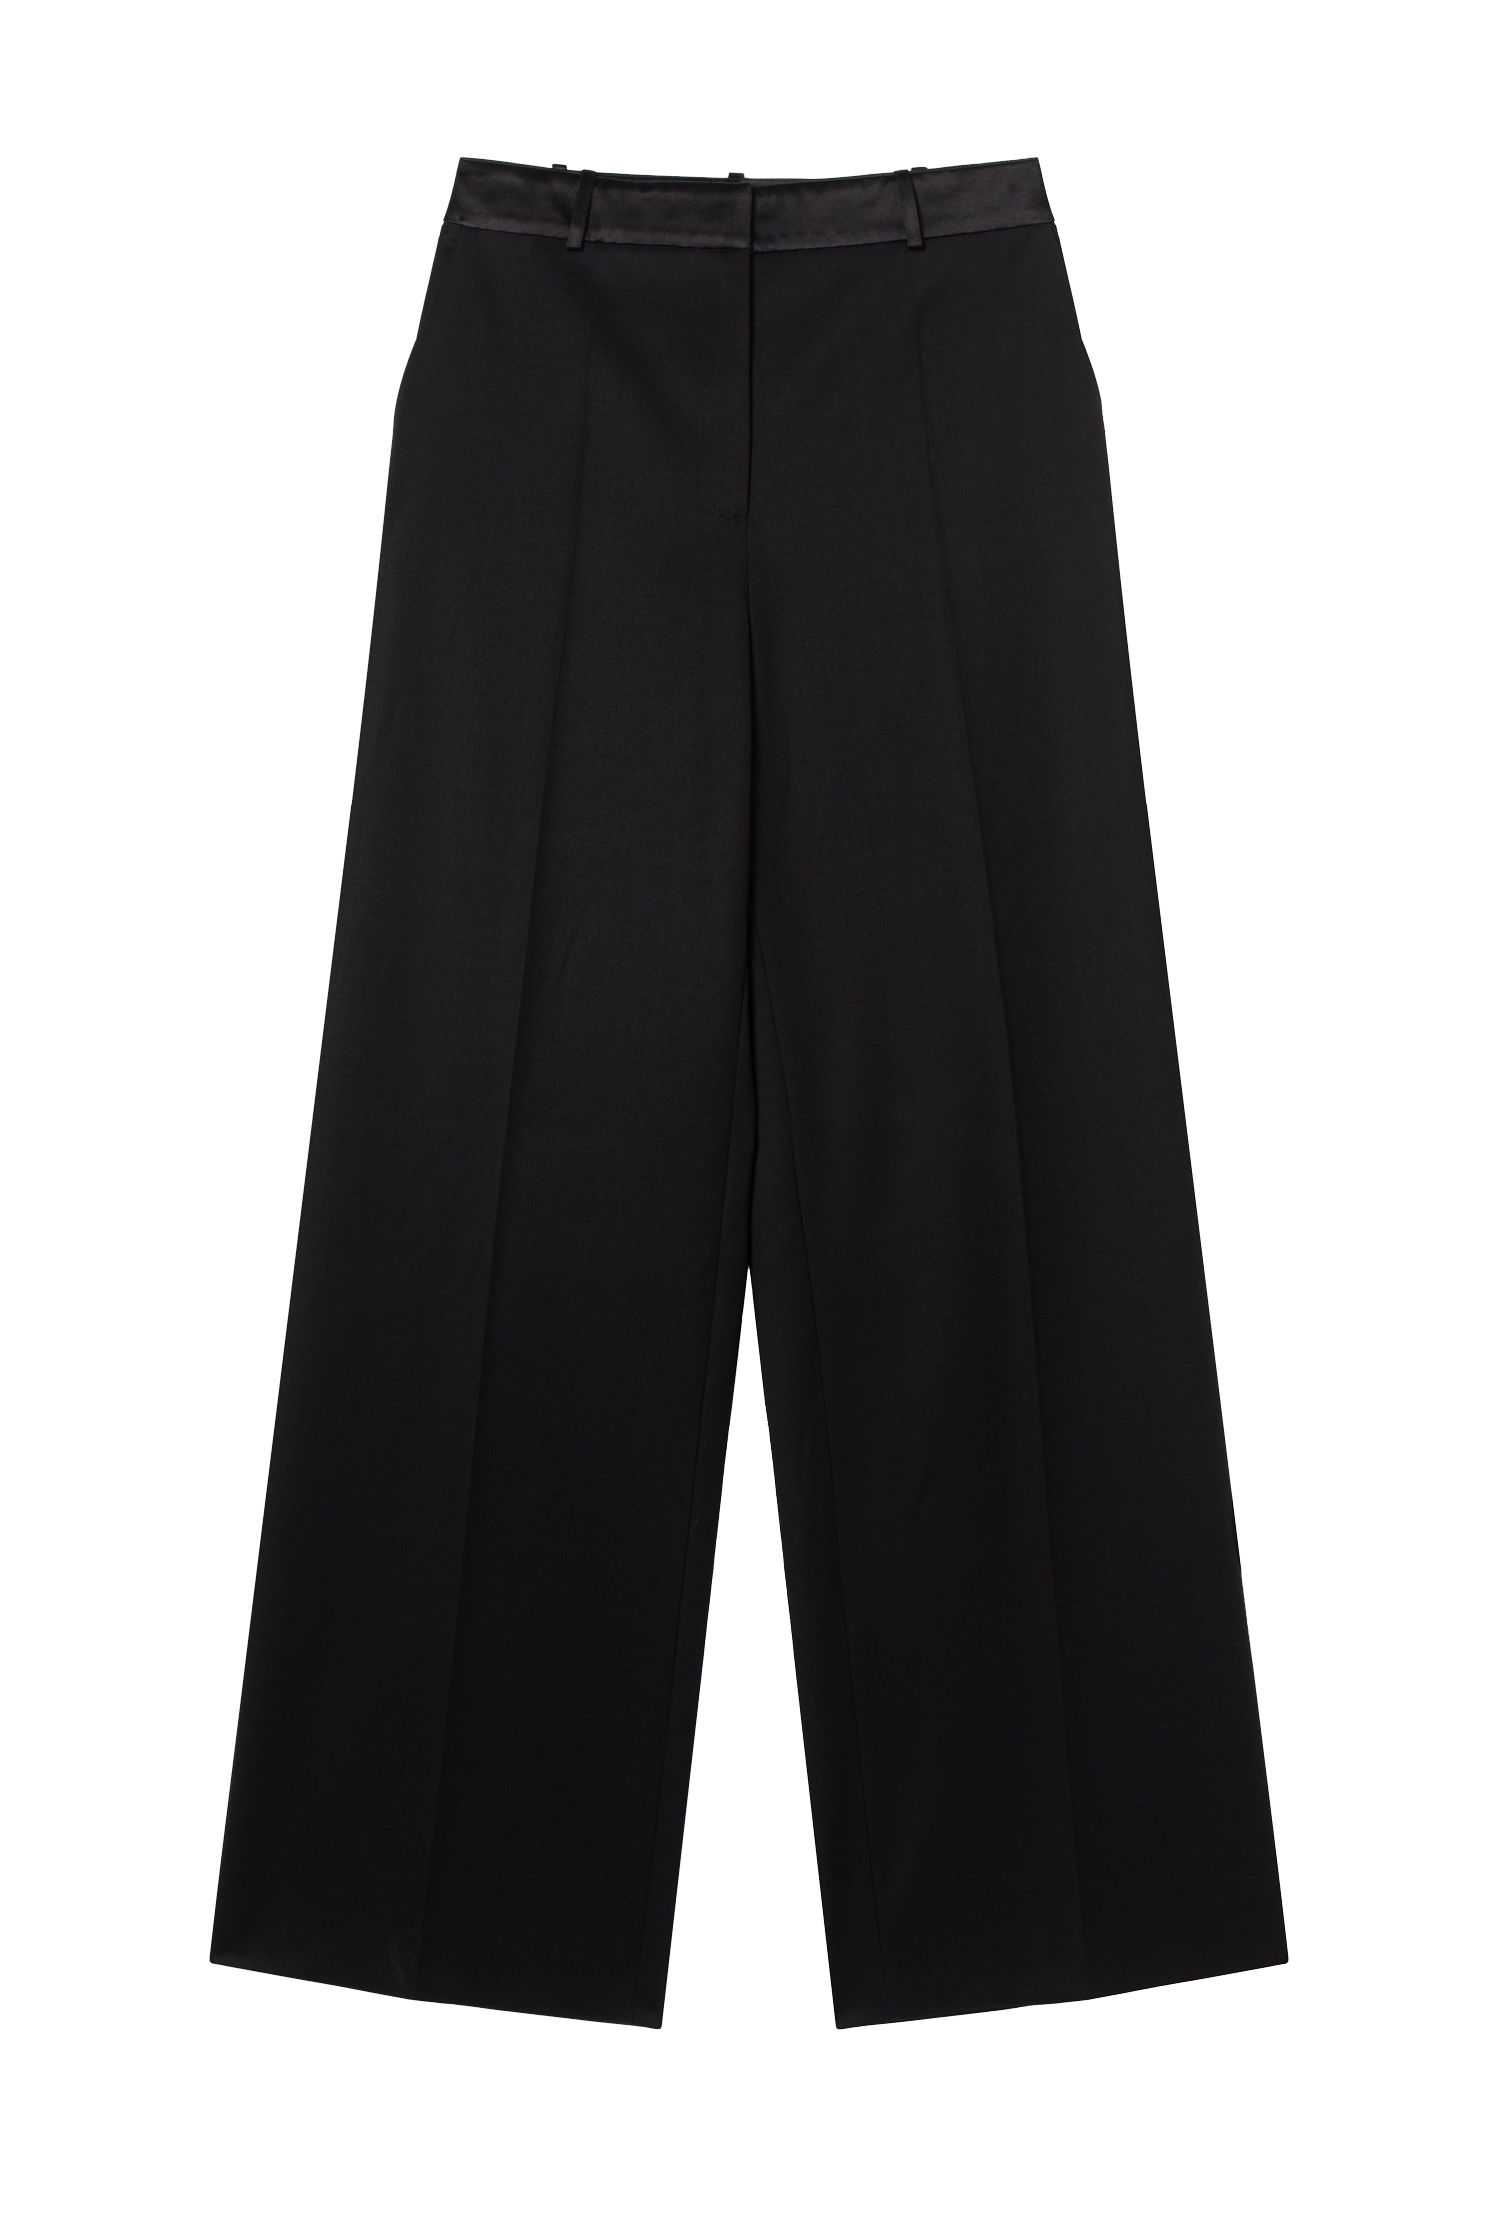 pantalon de smoking femme grain de poudre noir Made in France par Facettes Studio